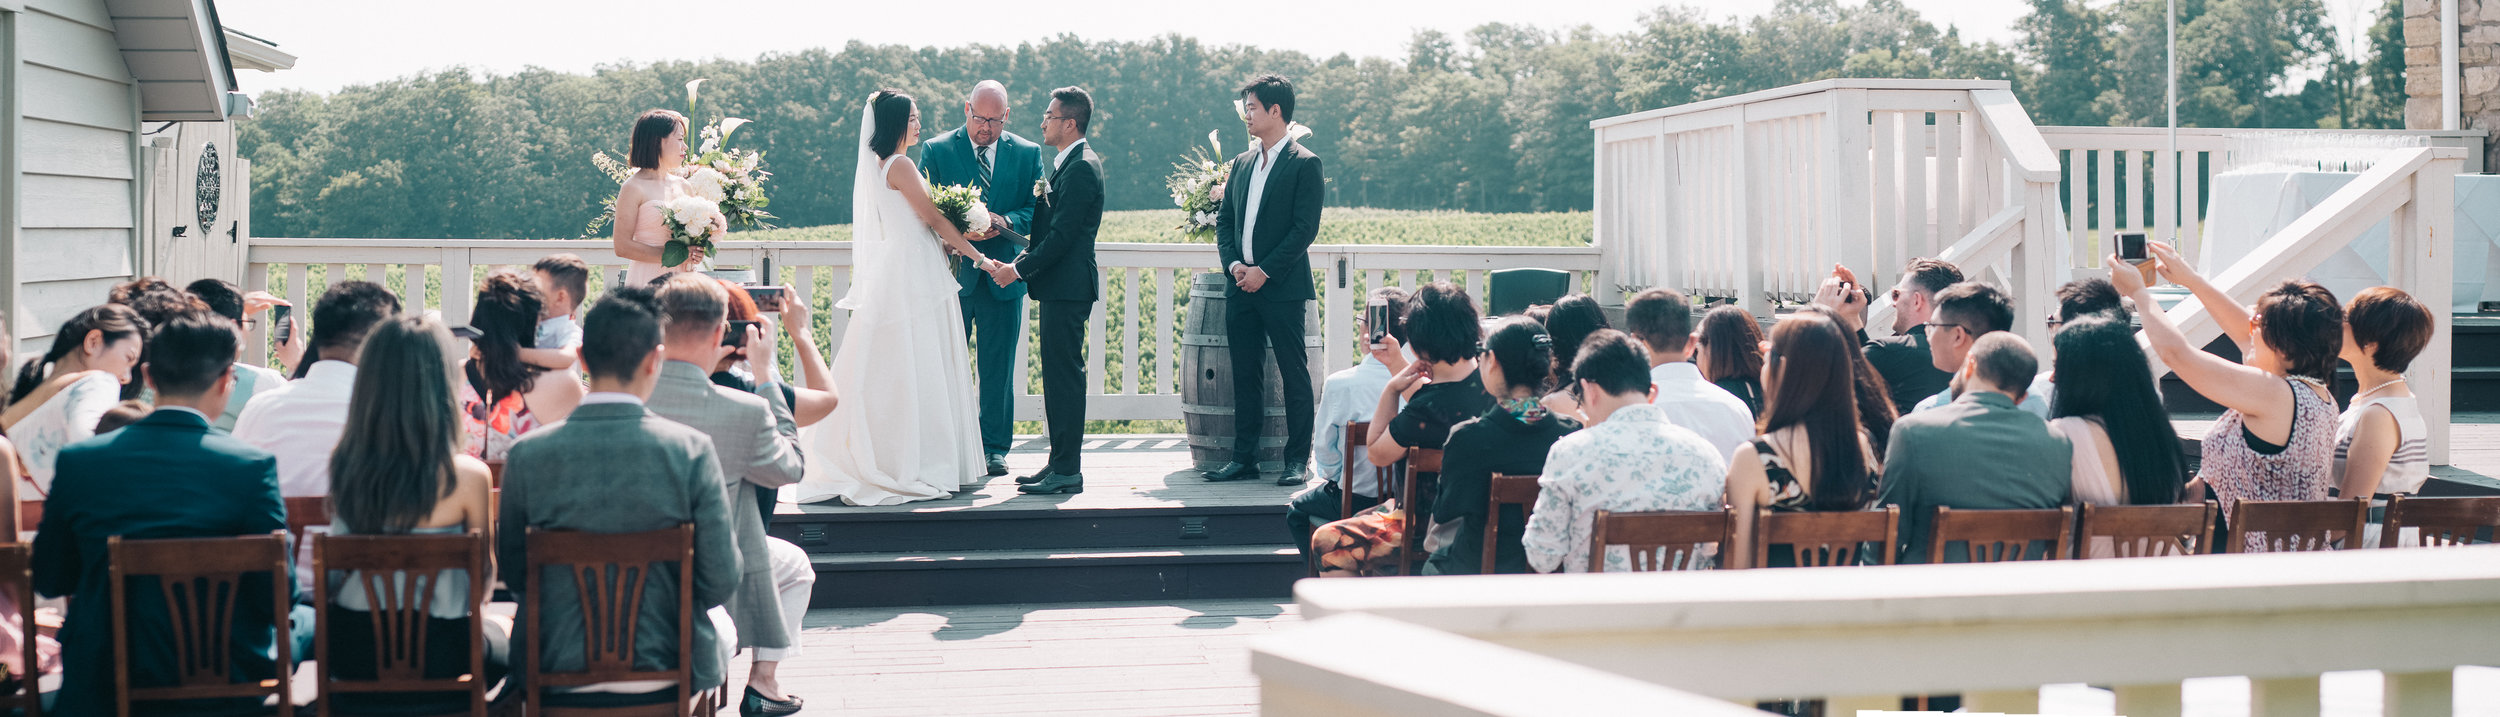 Niagara wedding photography